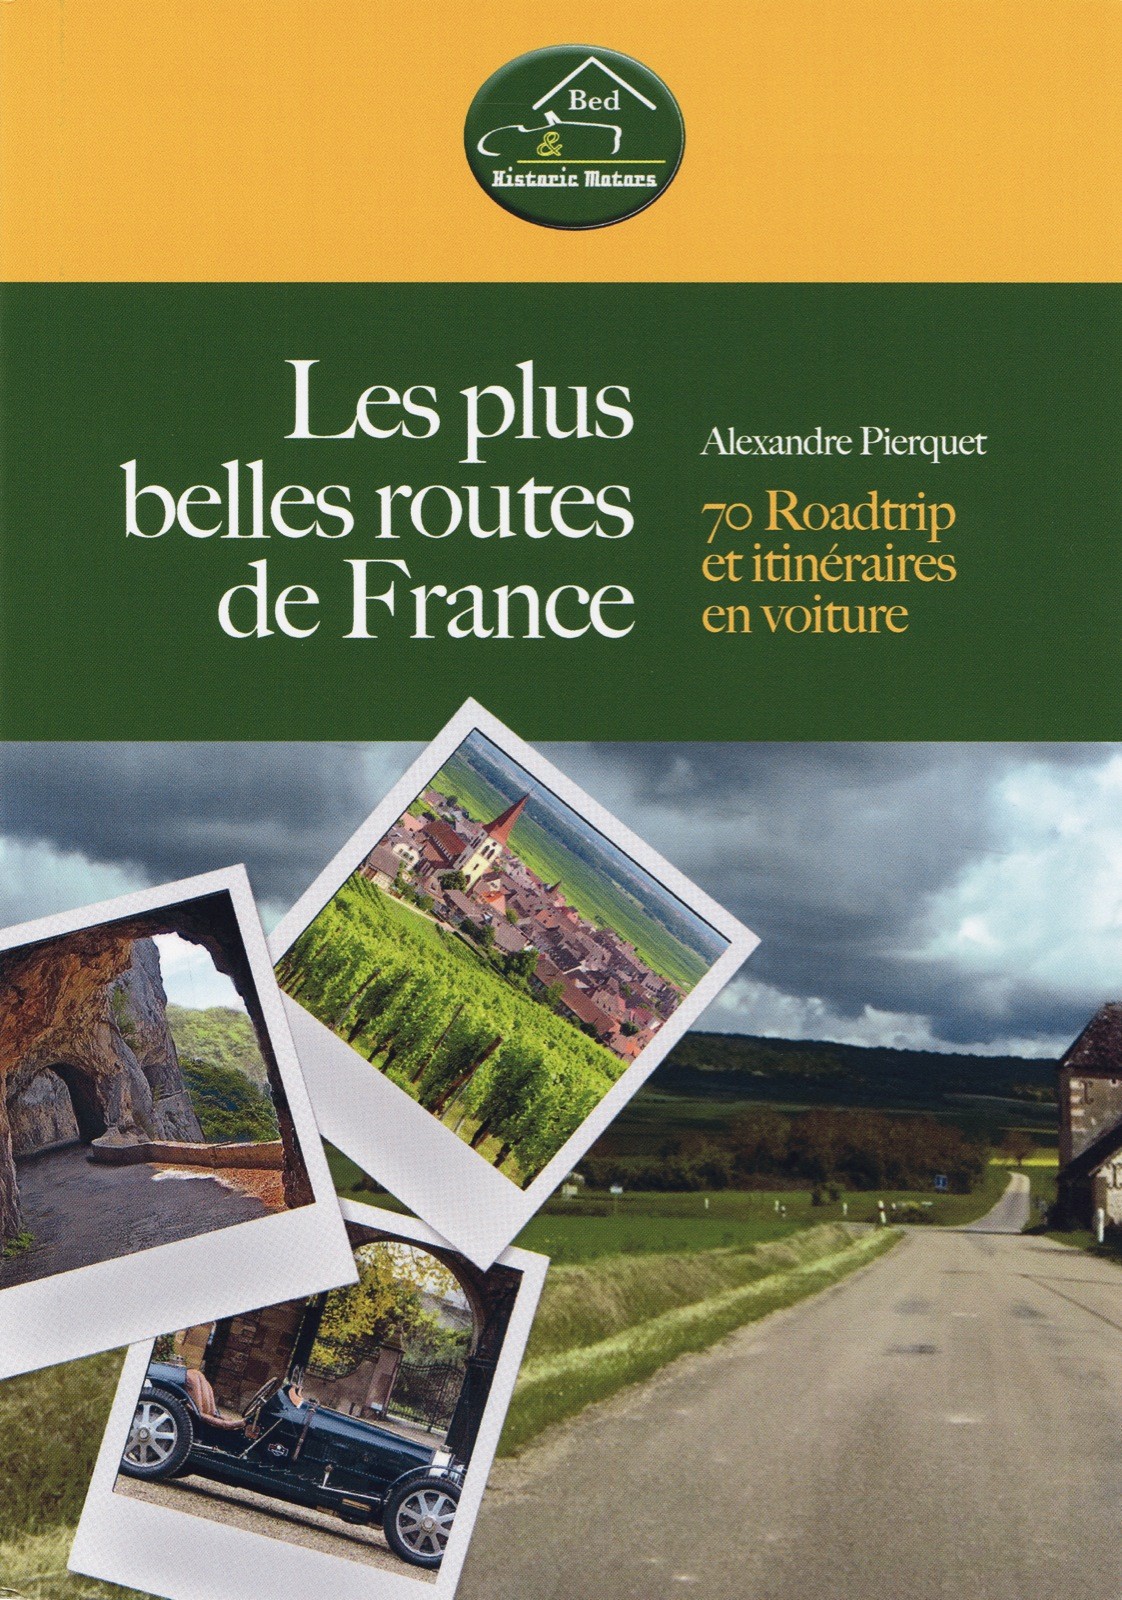 Les plus belles routes de France 70 roadtrip et itinéraires en voiture